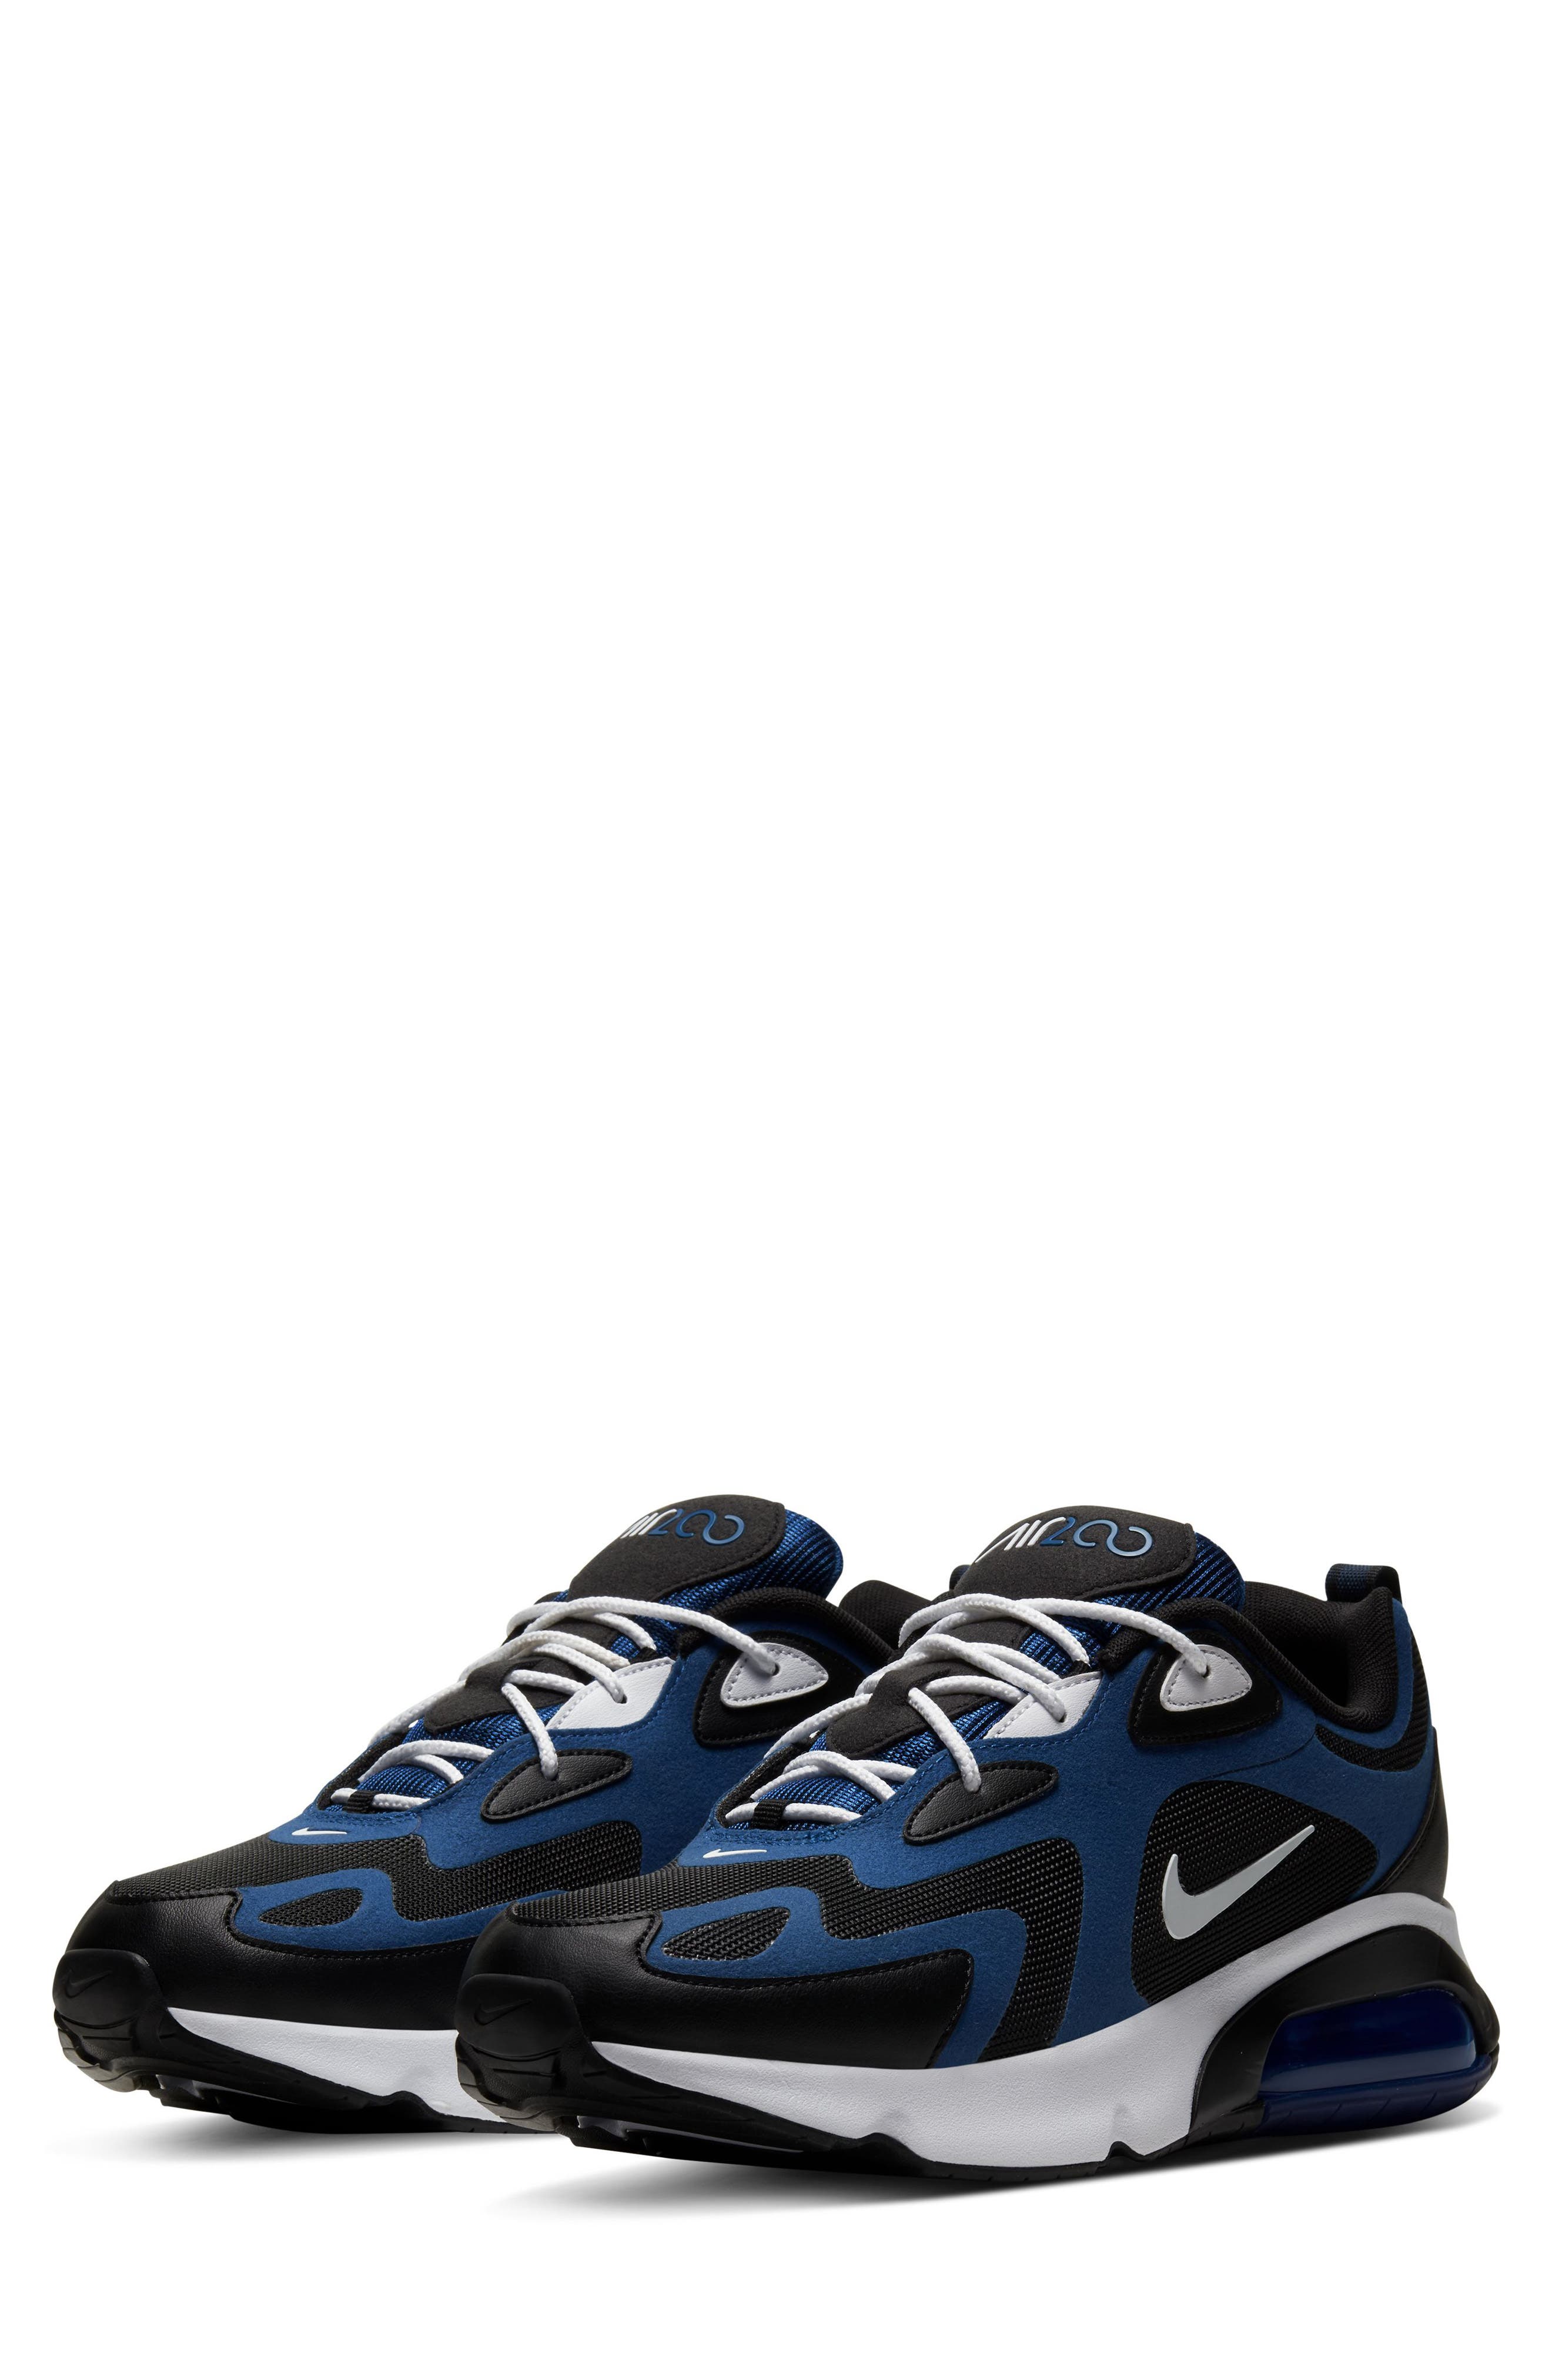 Men's Nike Air Max 200 Sneaker, Size 10 